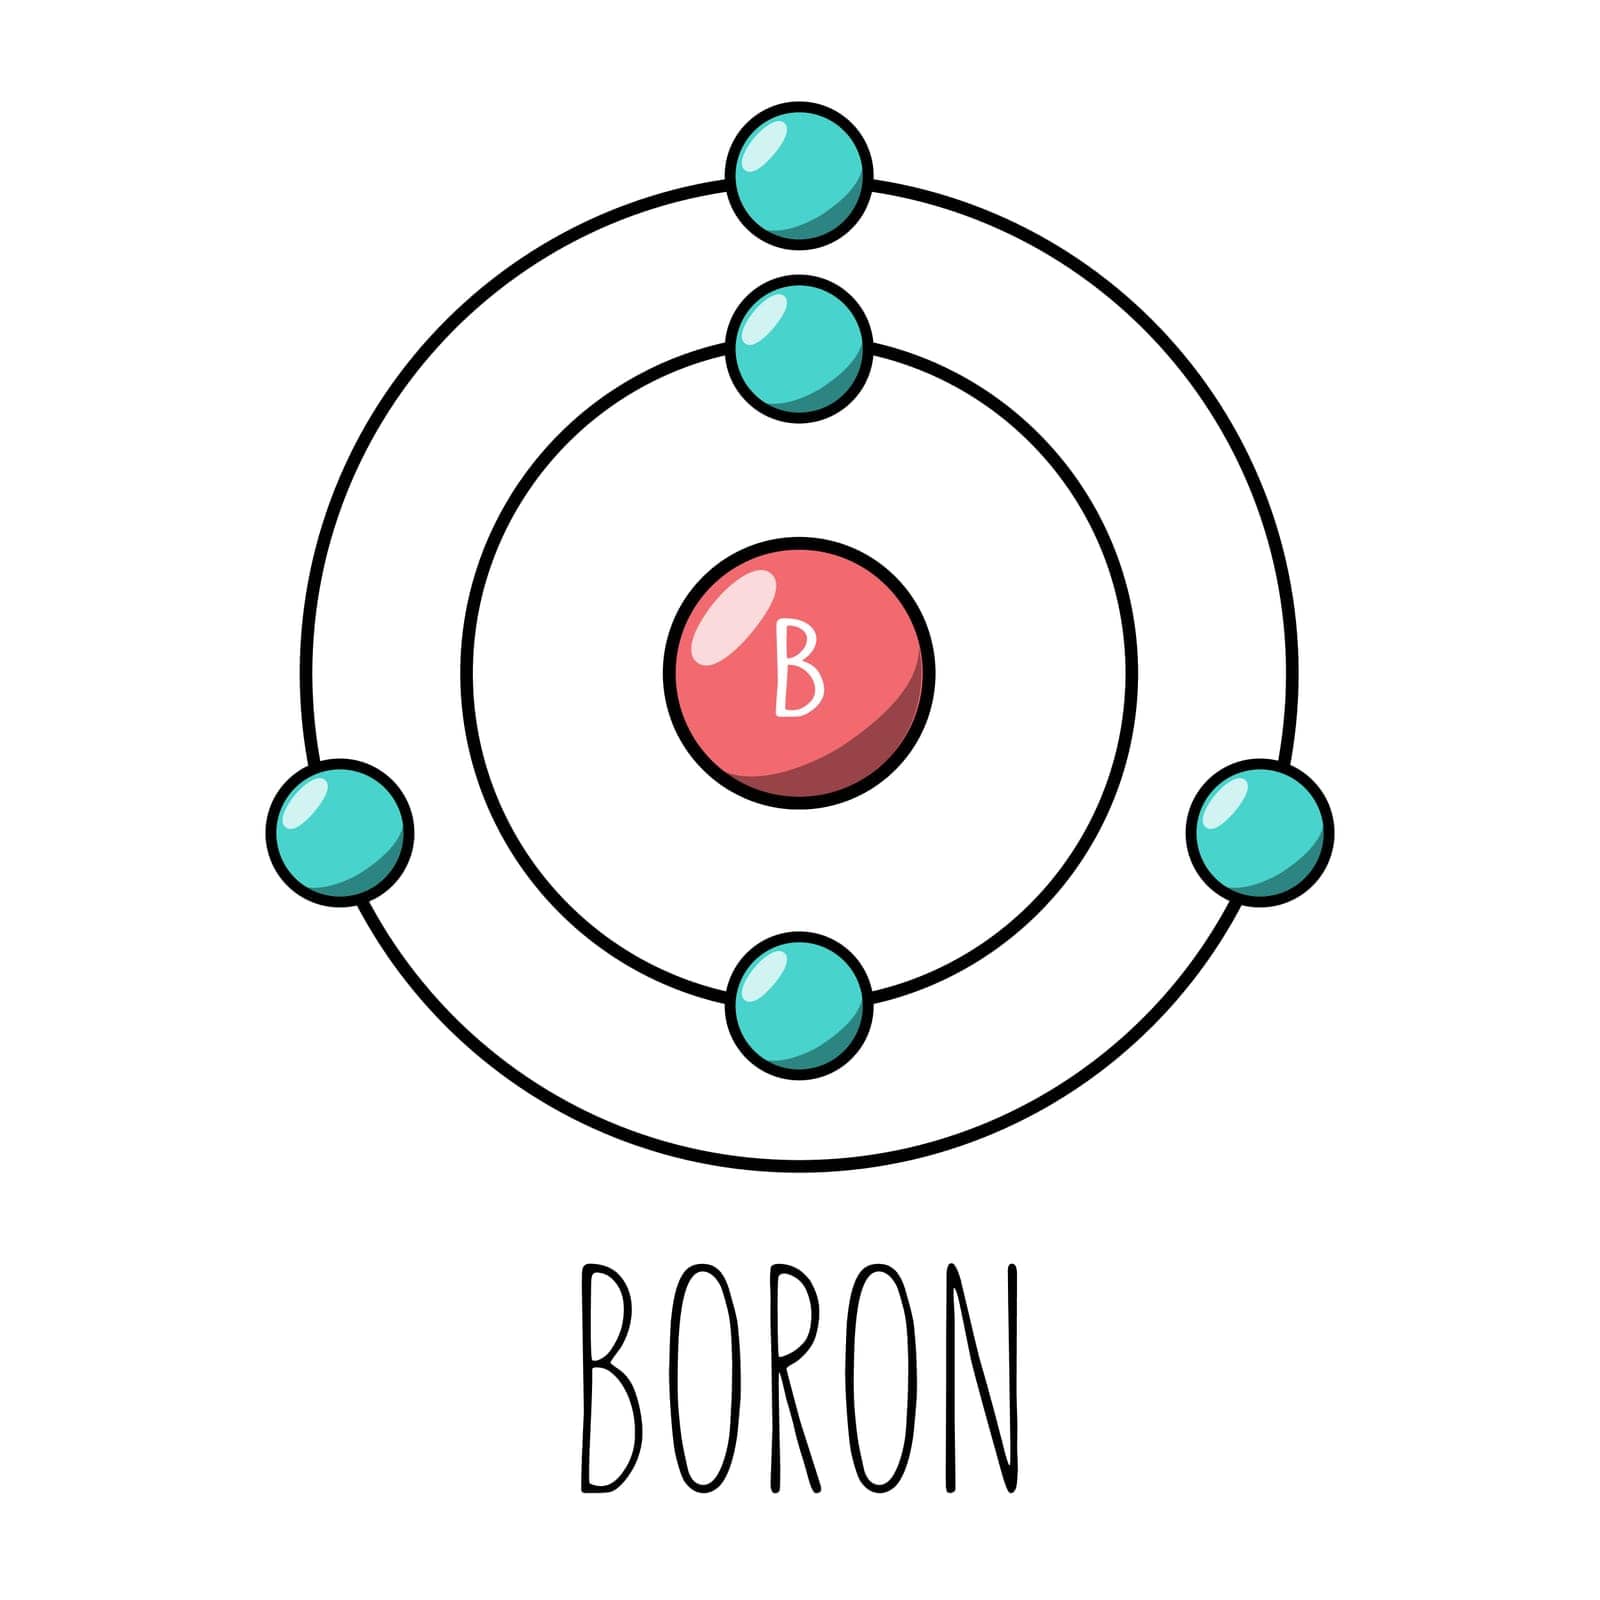 Boron atom Bohr model by AnnaMarin